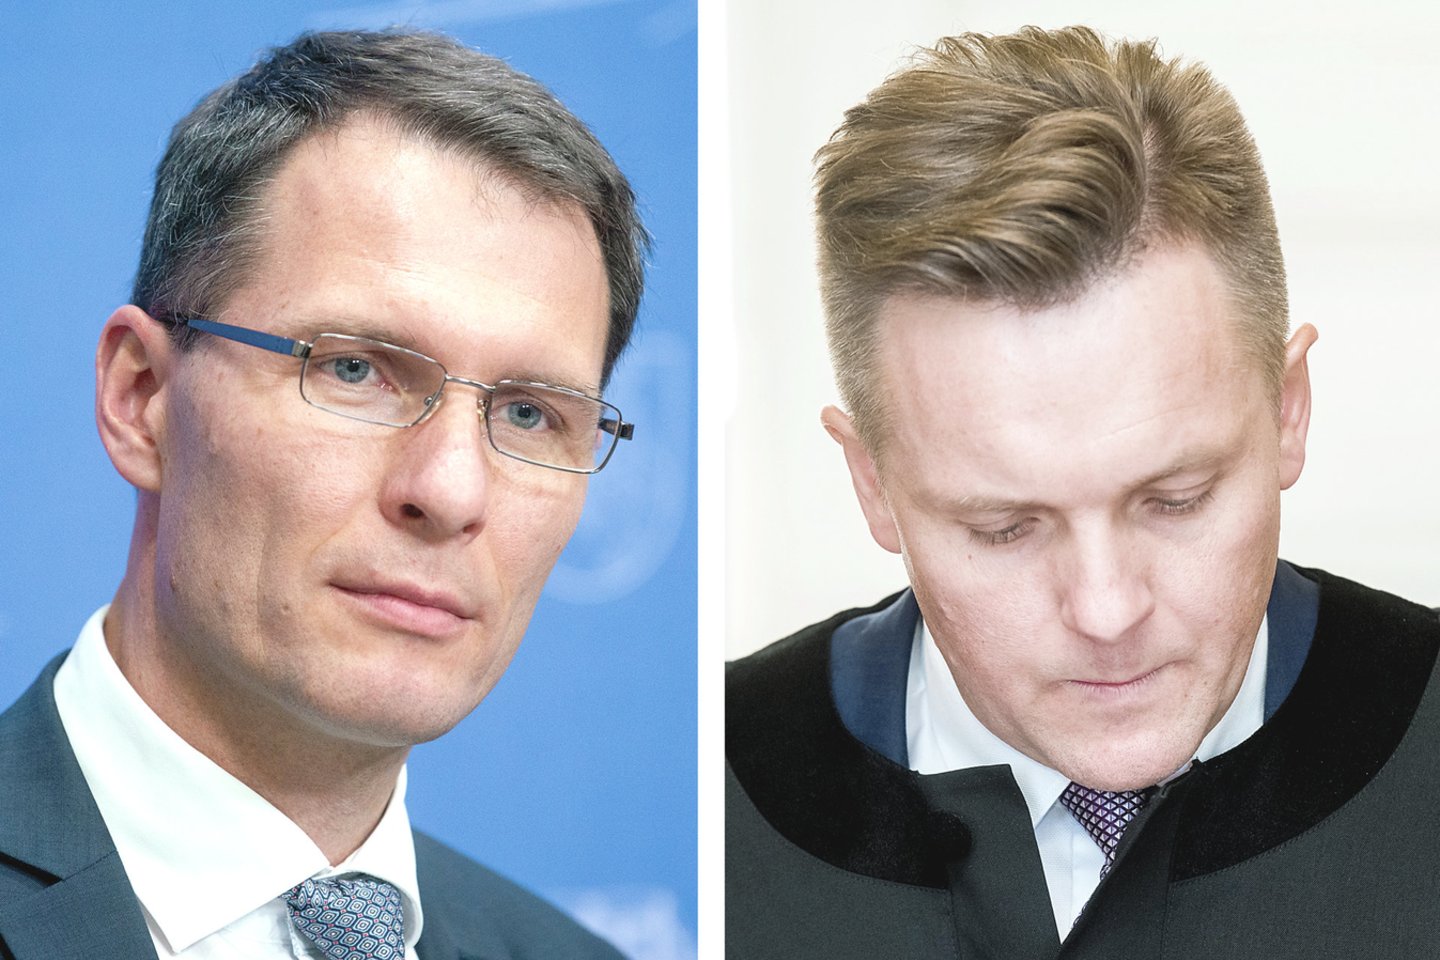 Buvęs teisingumo ministras E.Jankevičius (nuotr. kairėje) bandė paaiškinti, kodėl iškėlė drausmės bylą advokatui E.Dereškevičiui, gynusiam klientą.